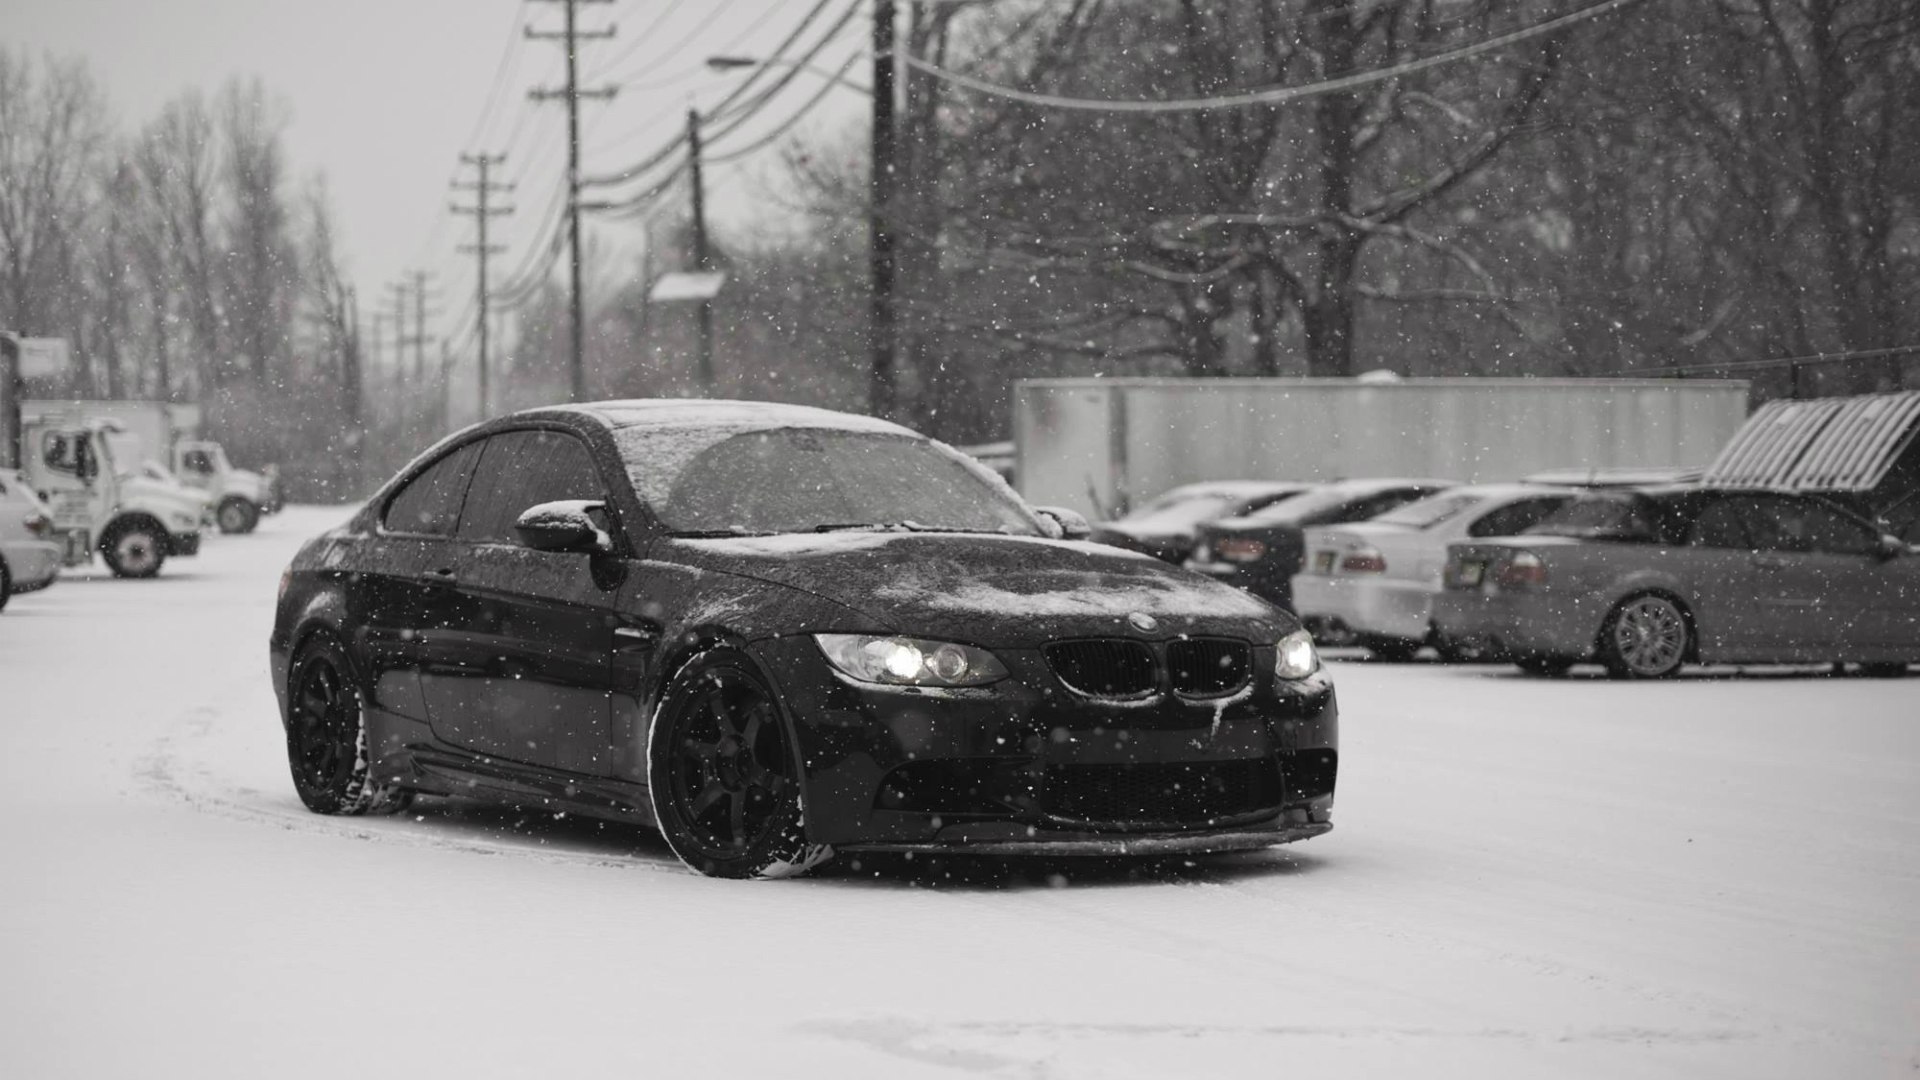 BMW m5 зима